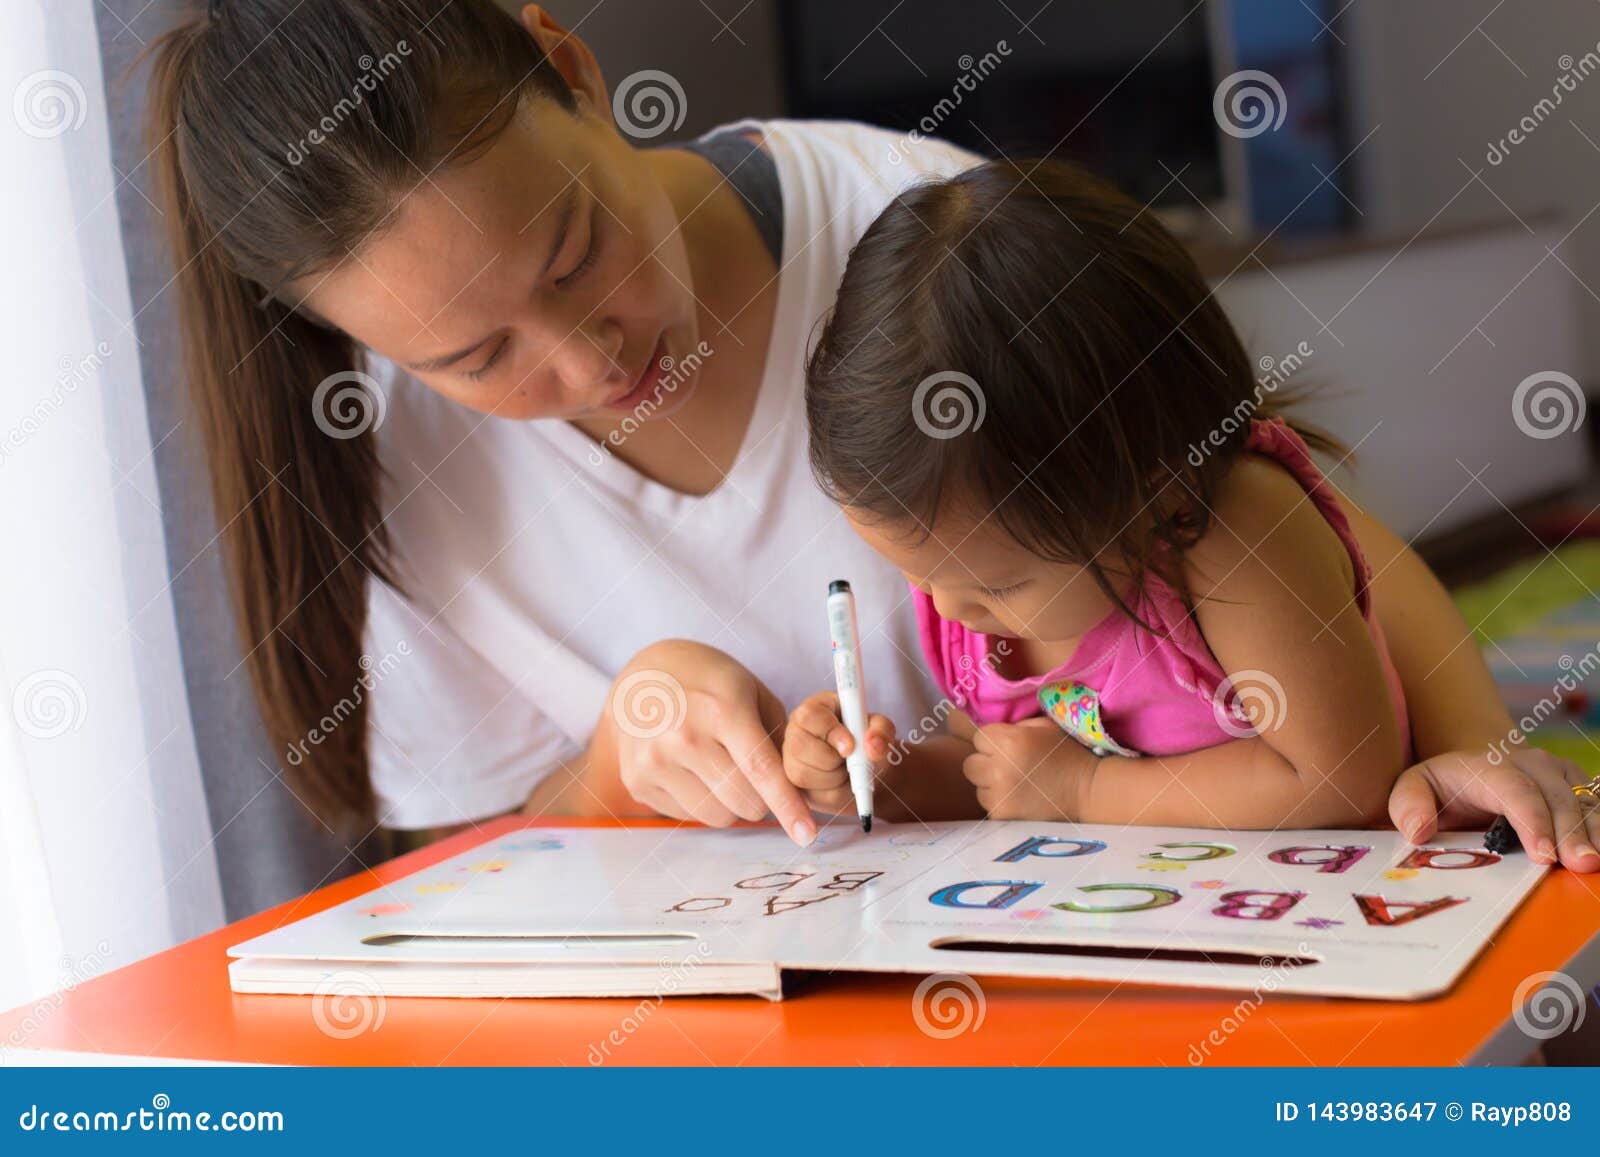 Написать Ребенку Под Фото